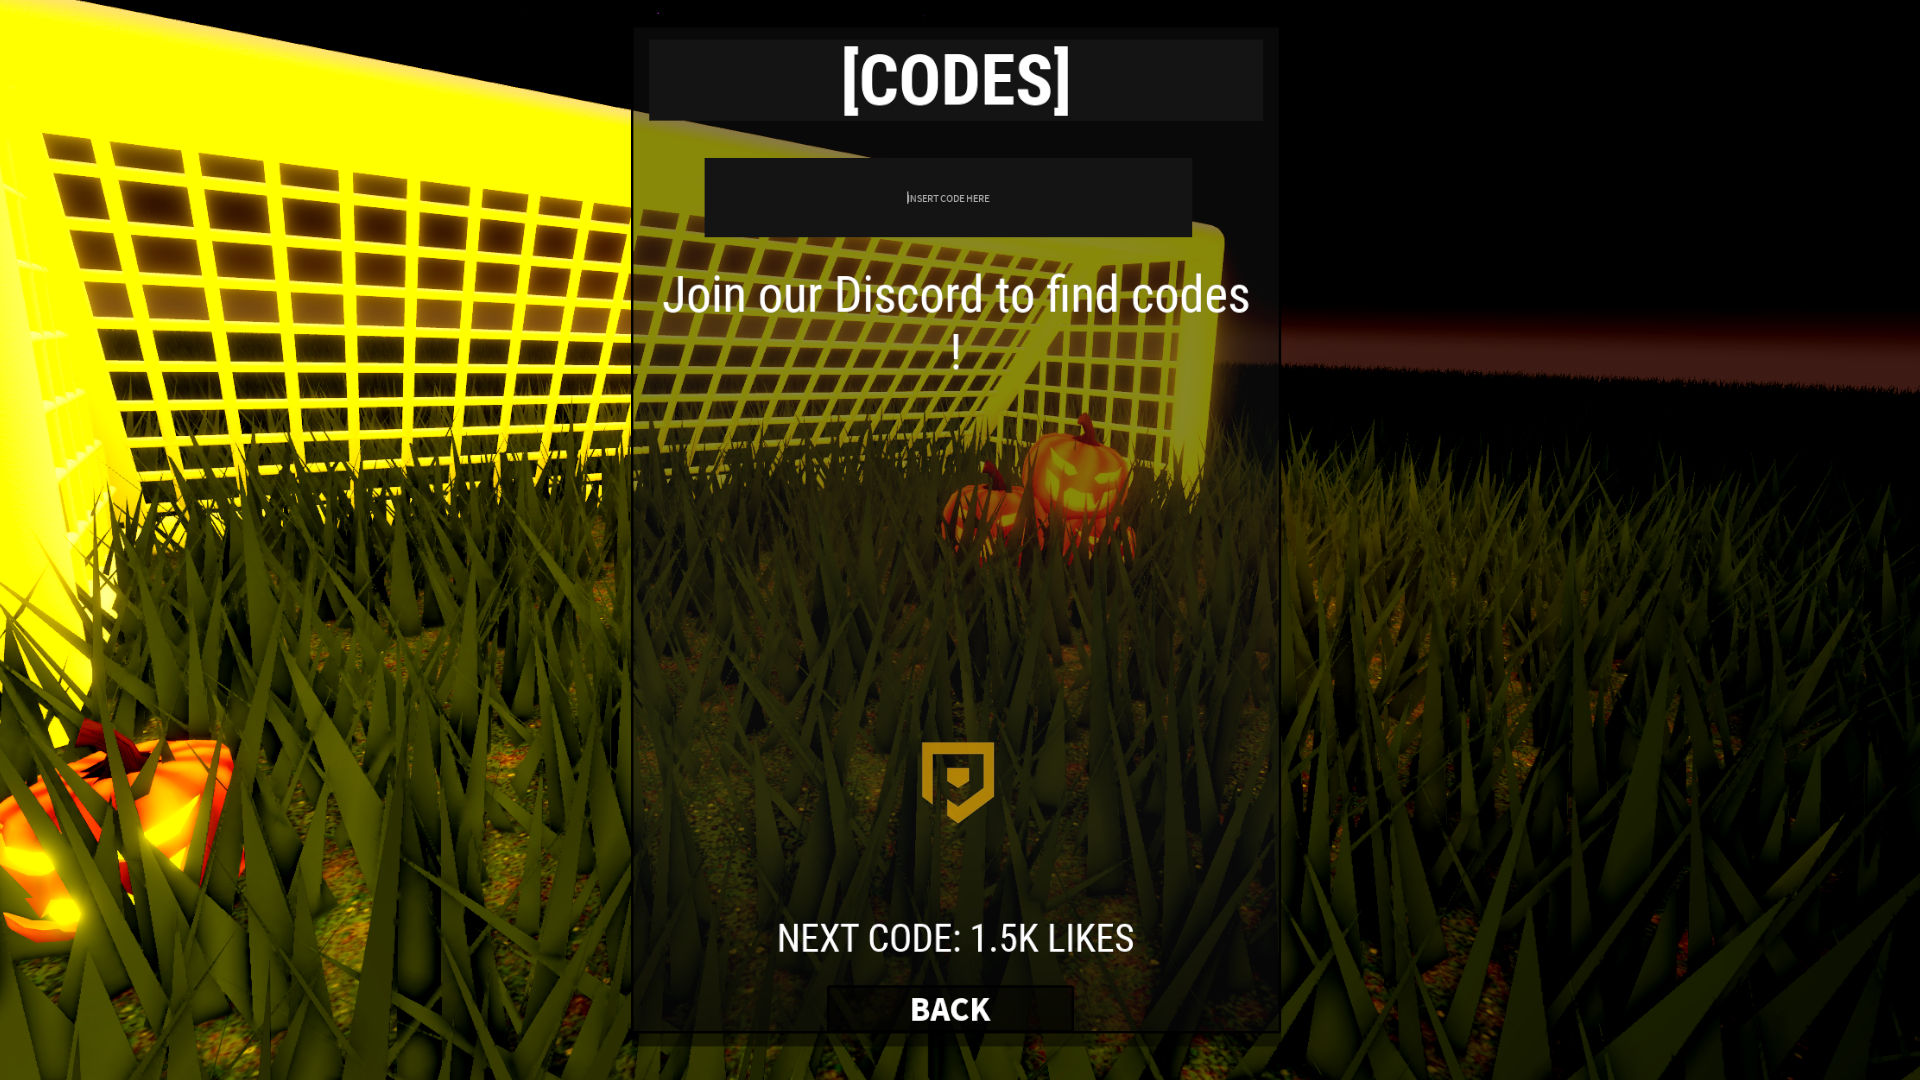 Roblox Goal Kick Simulator Codes (December 2023)